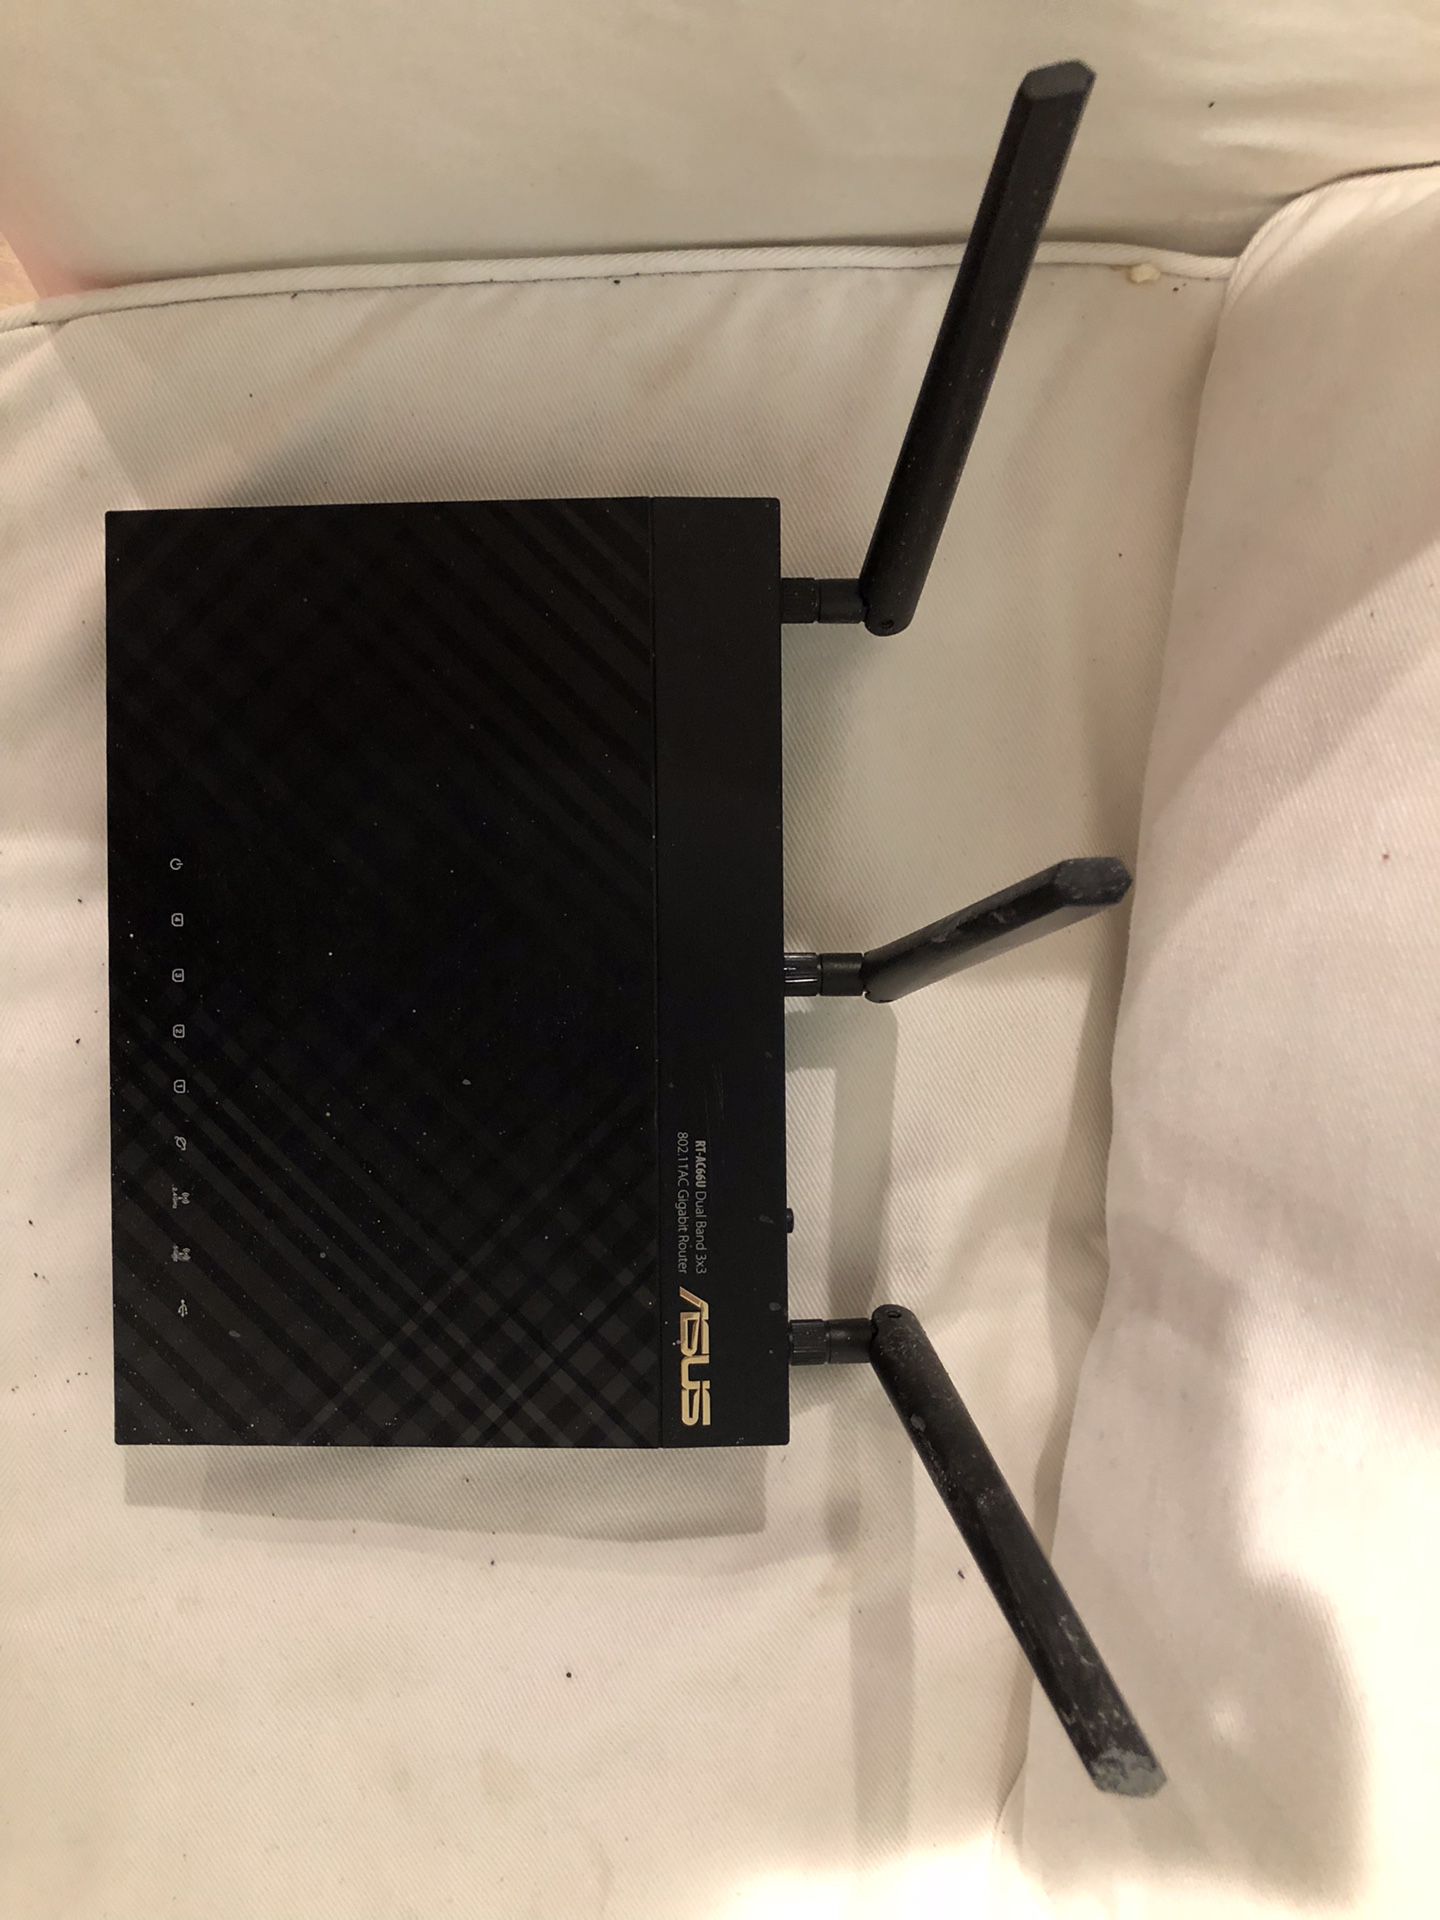 ASUS RT-AC66U 802.11ac Gigabit router